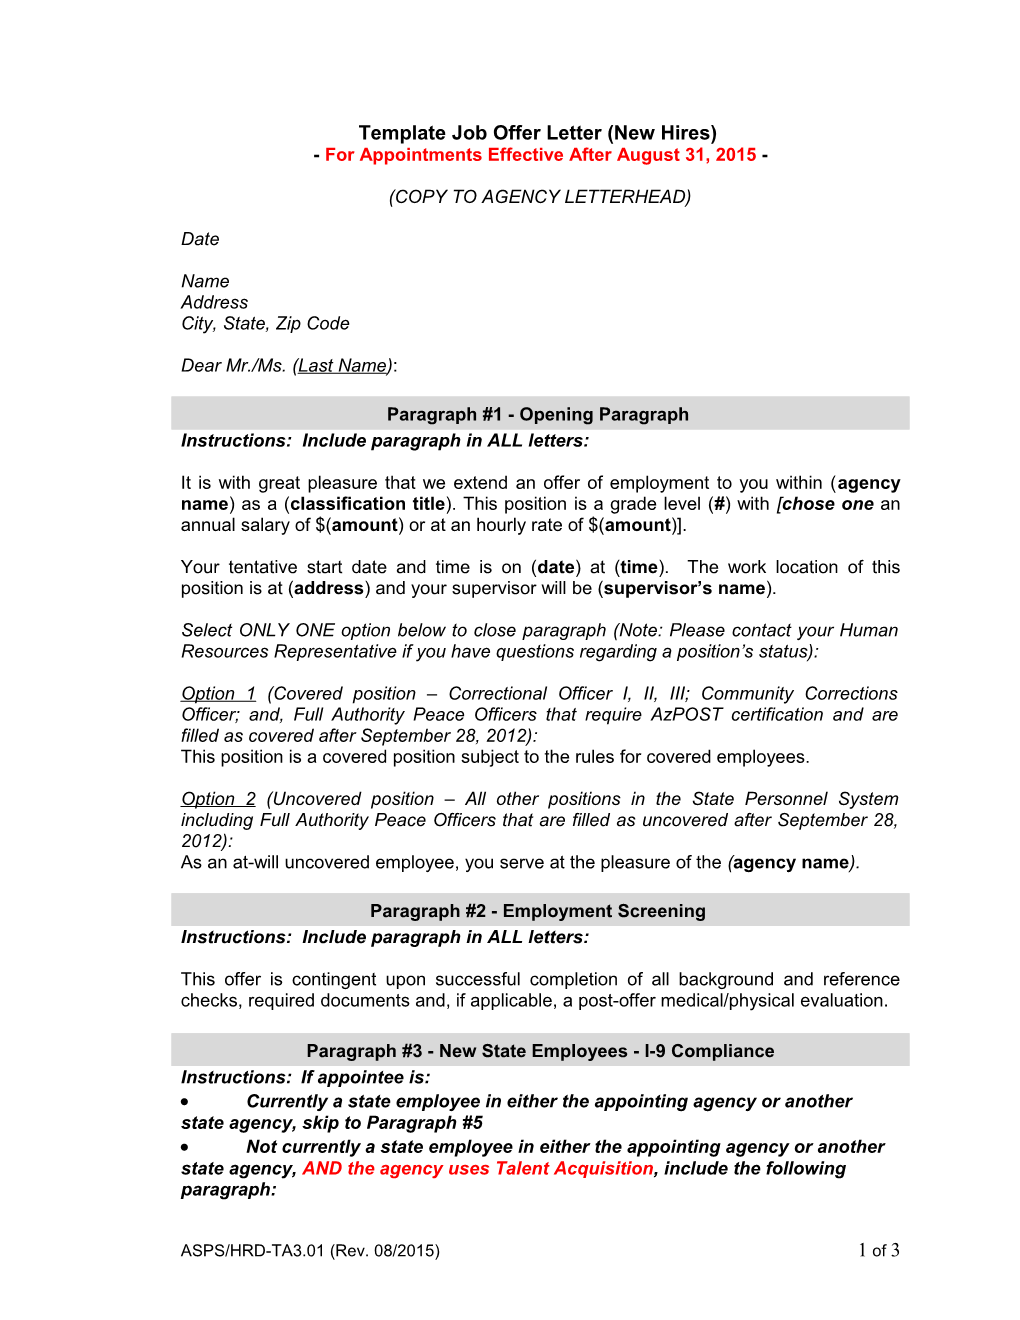 Template Job Offer Letter - Revised July 13, 2012